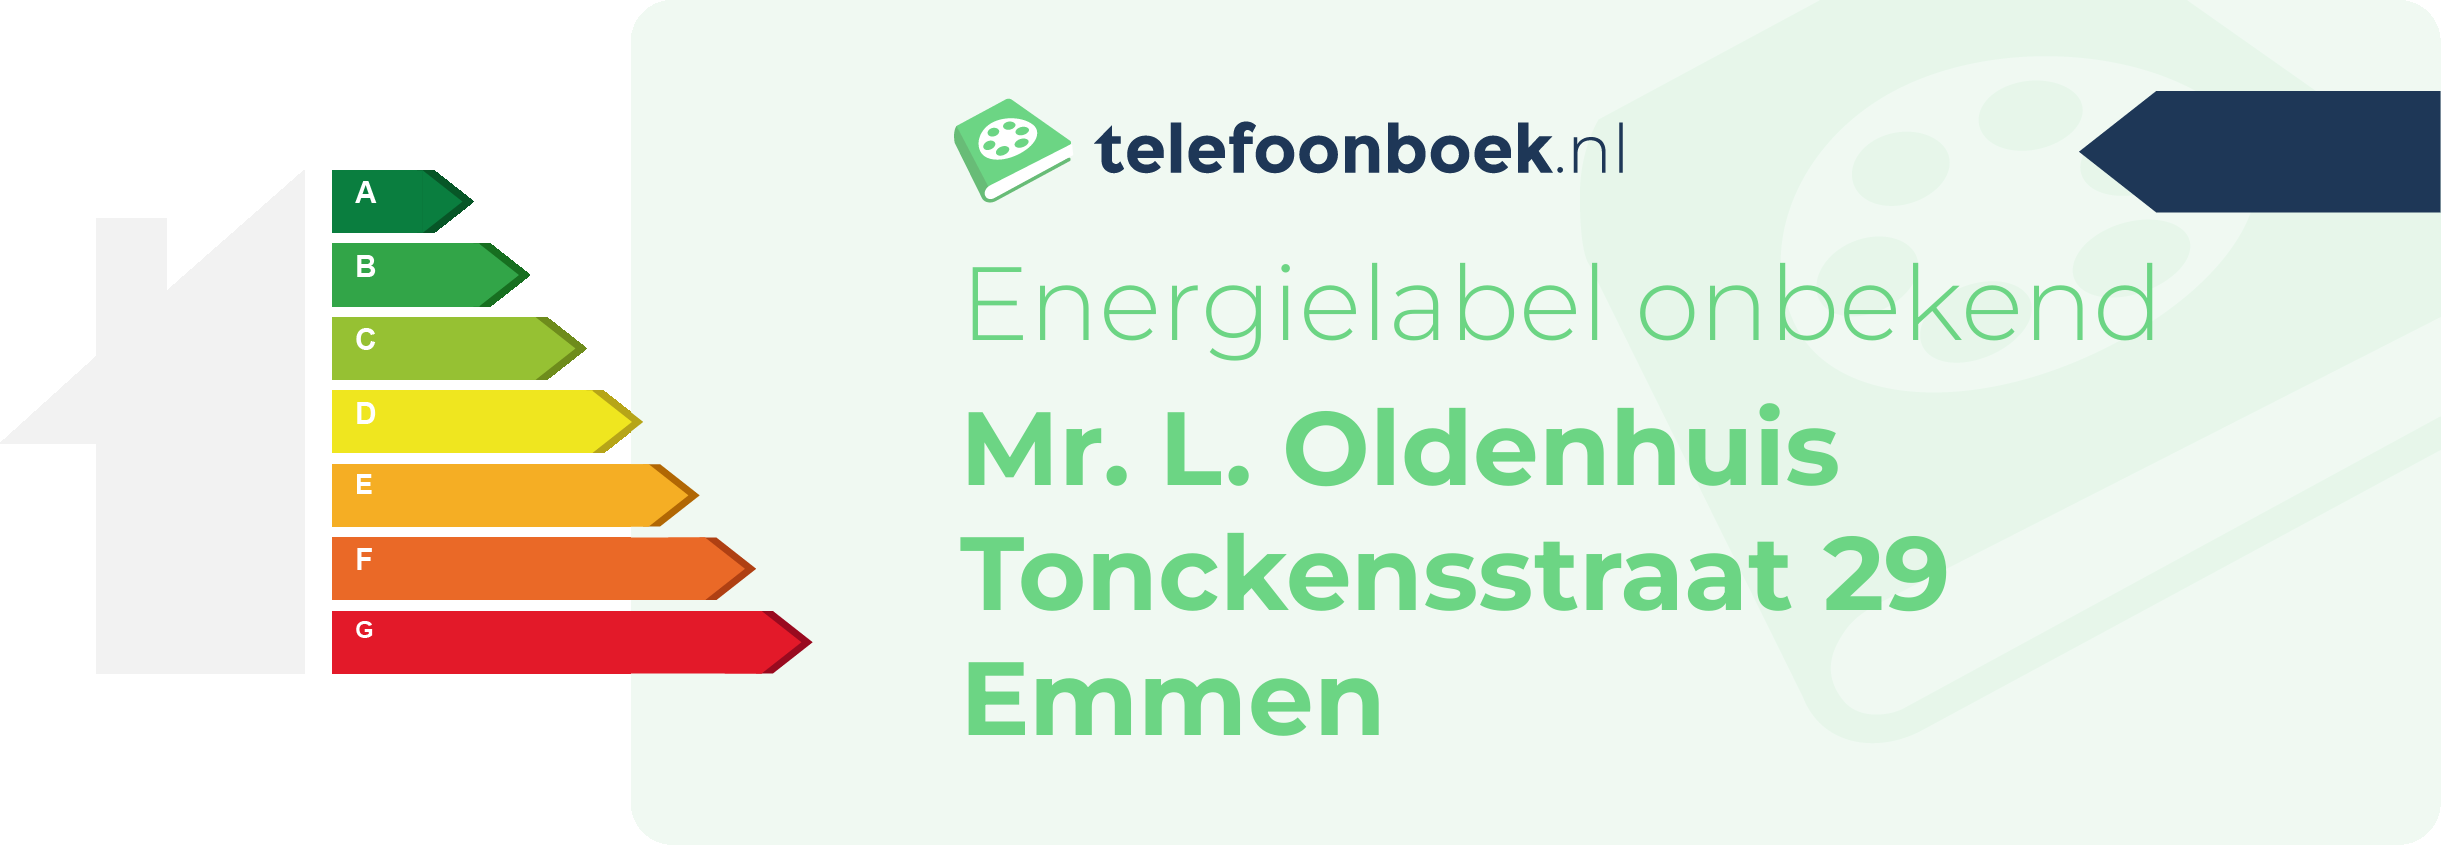 Energielabel Mr. L. Oldenhuis Tonckensstraat 29 Emmen